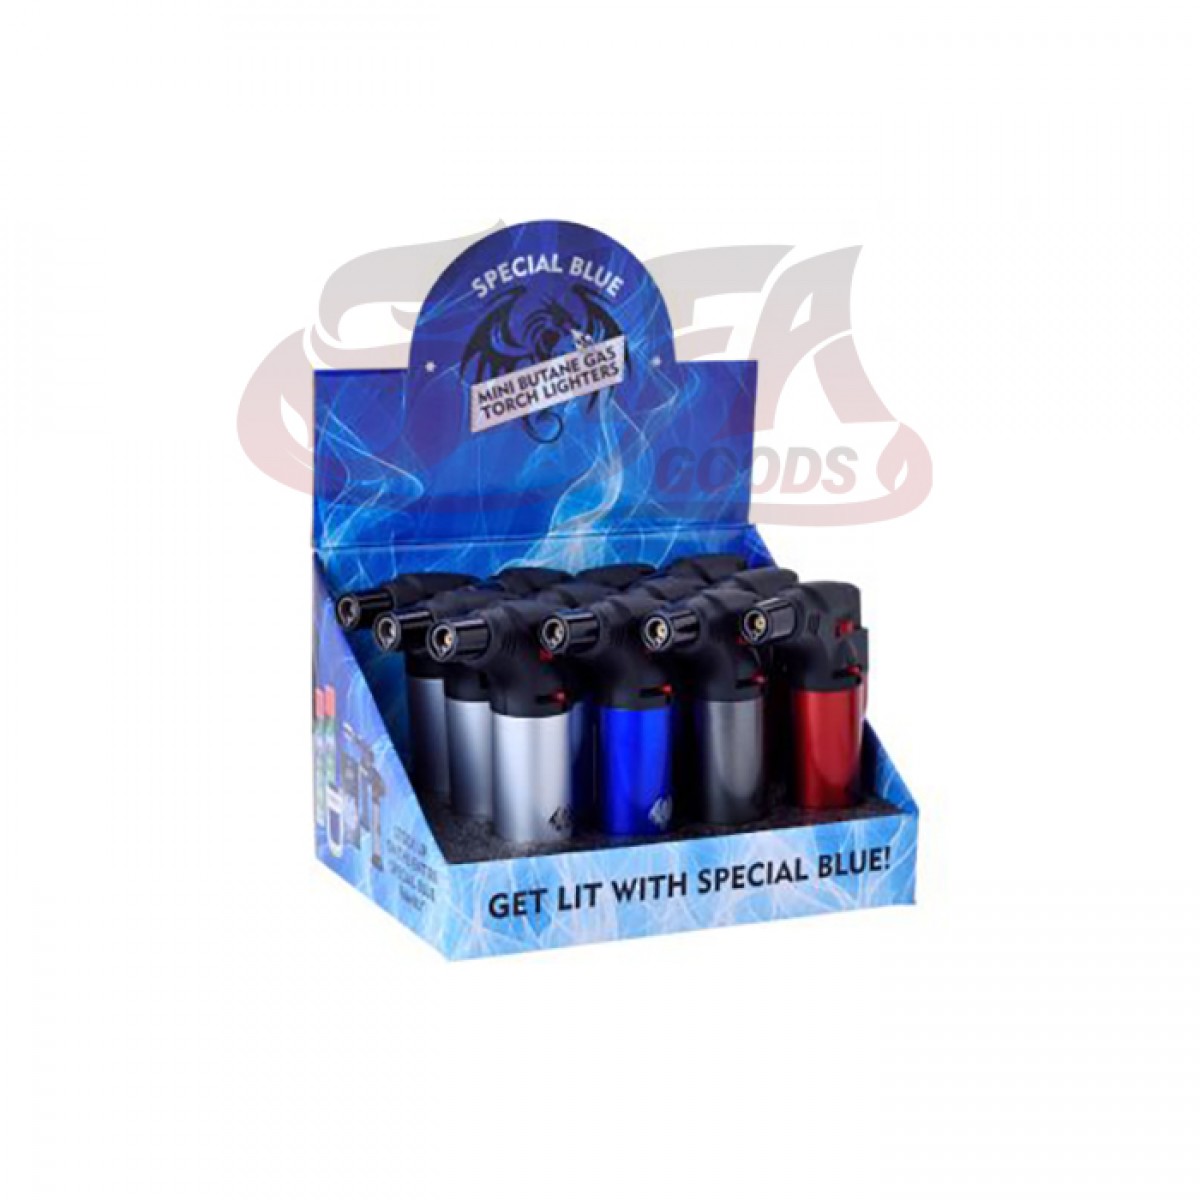 Special Blue - Bernie Metal Lighters - 12PC Display